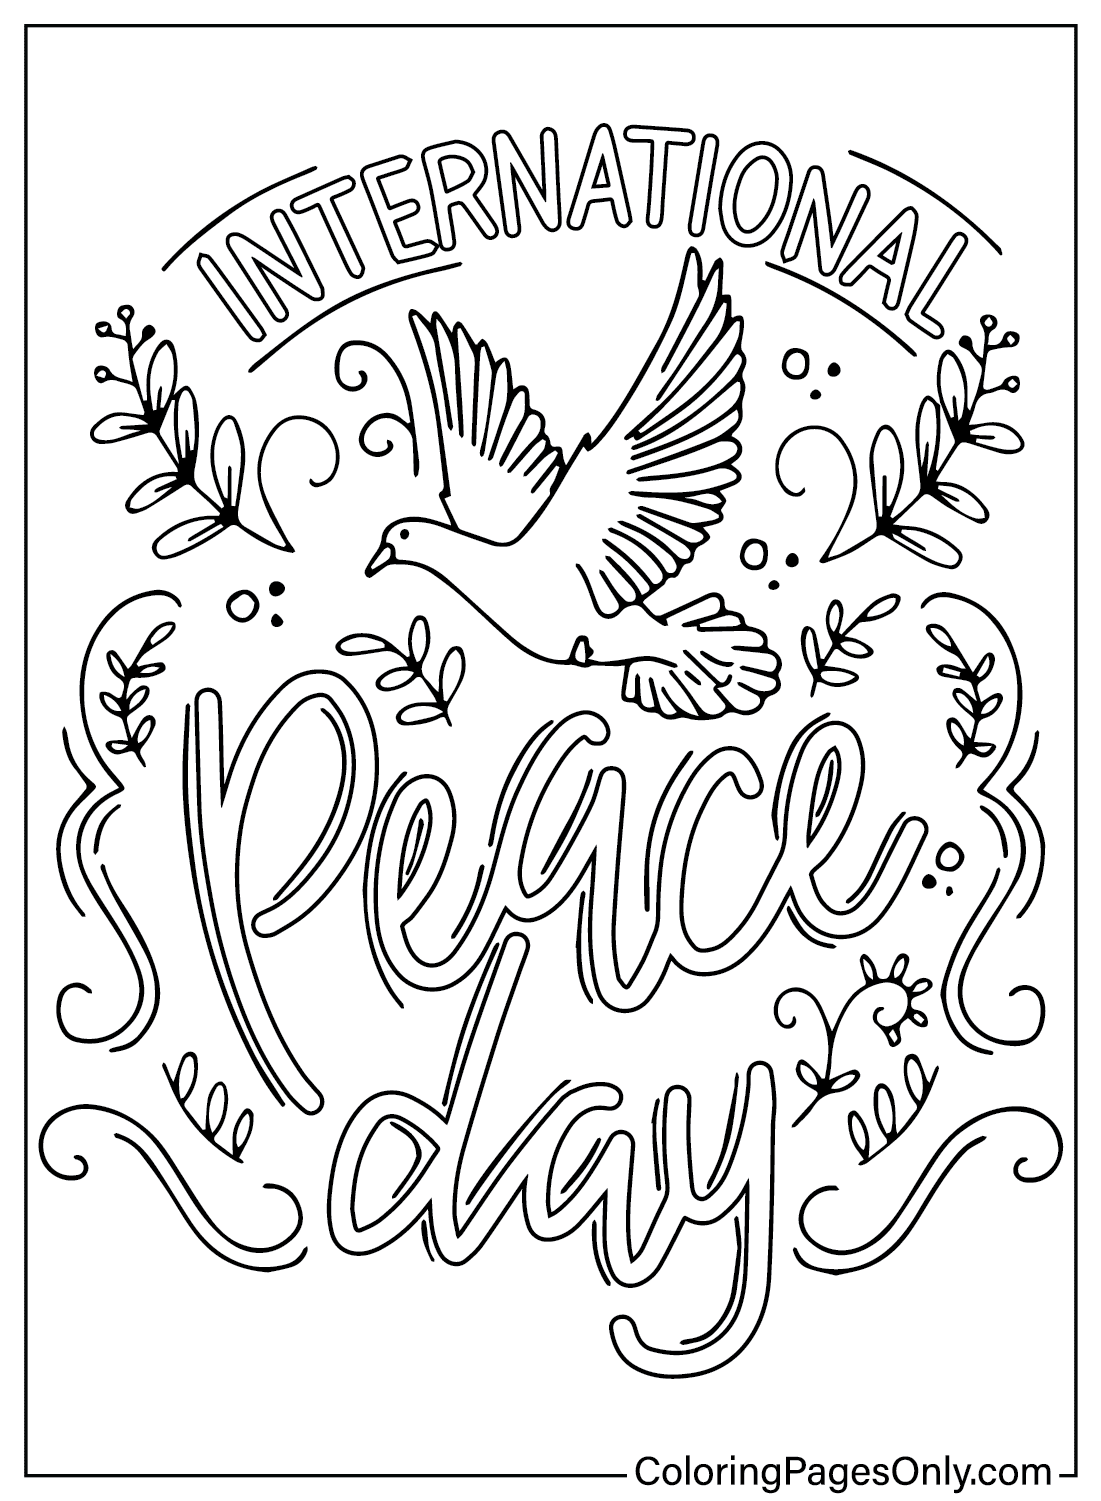 Цветная страница Международного дня мира из Международного дня мира